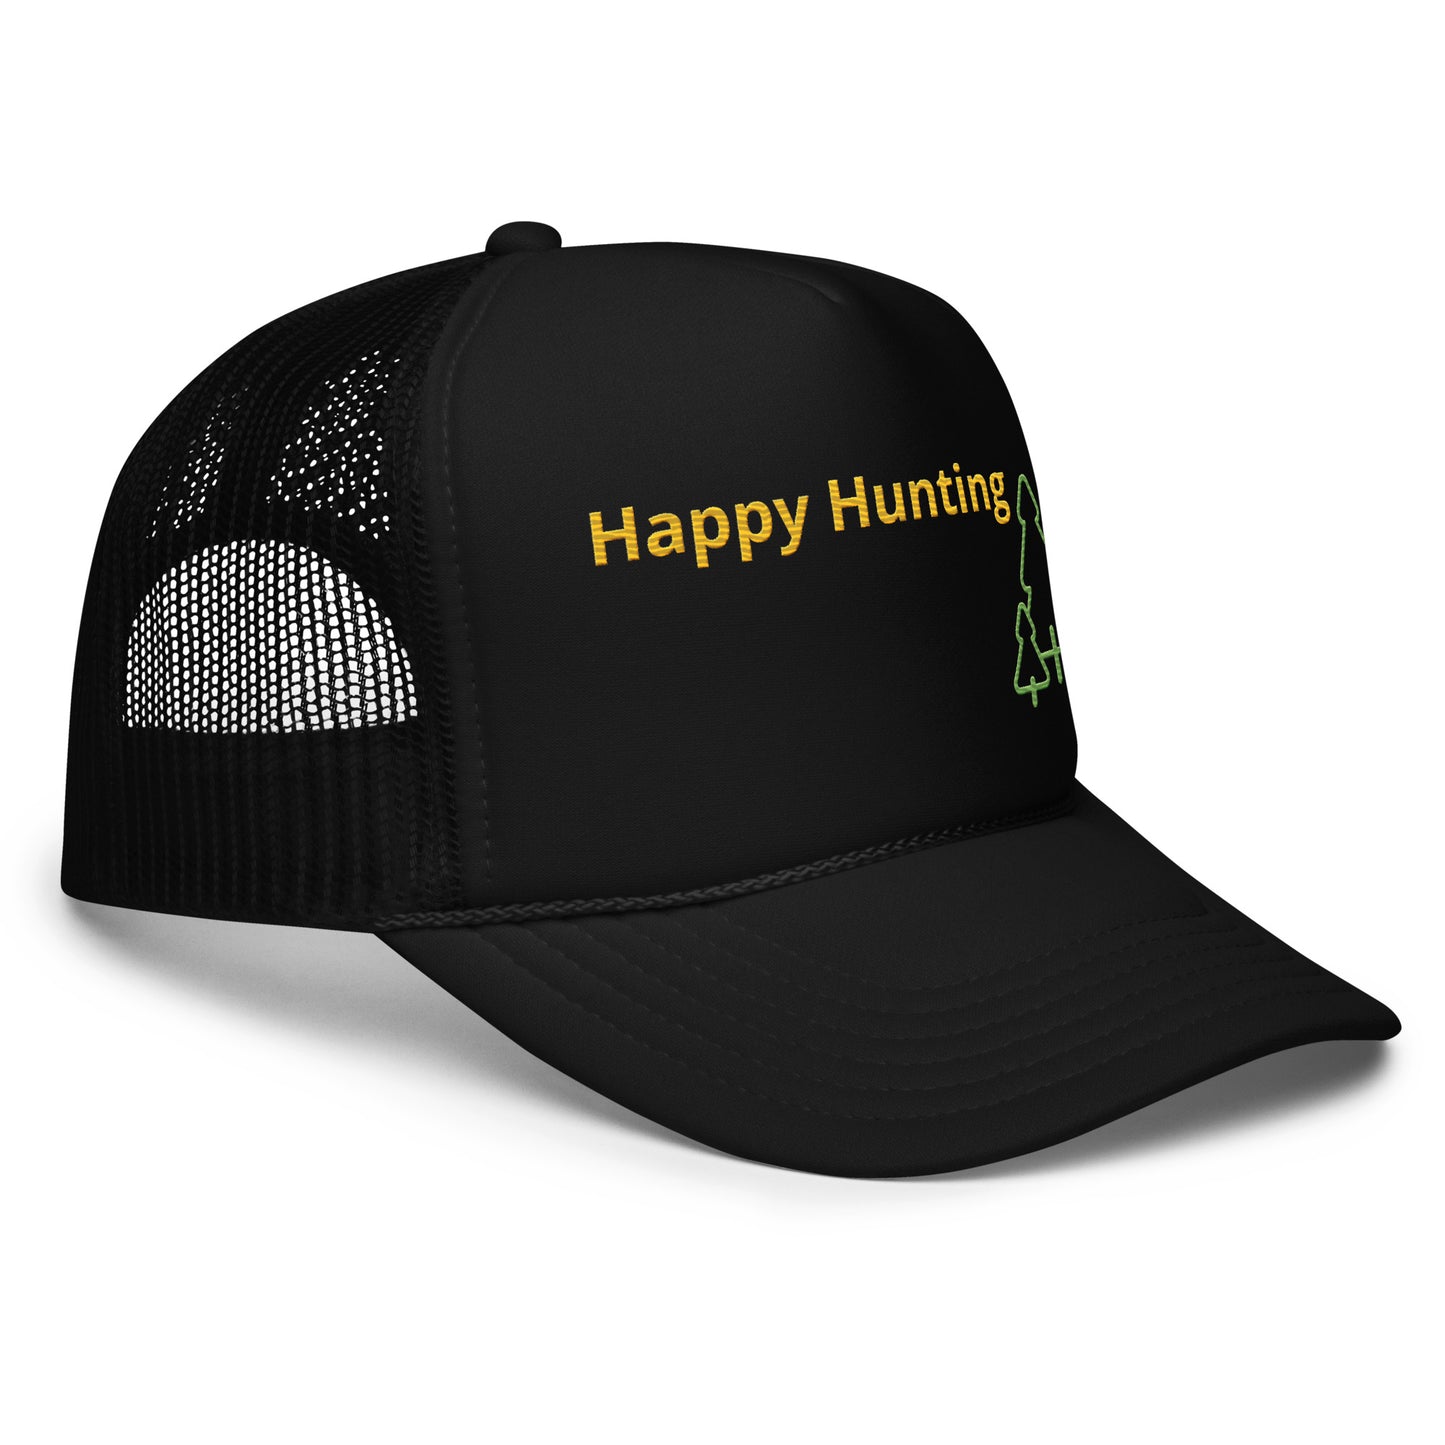 Happy Hunting Foam trucker hat